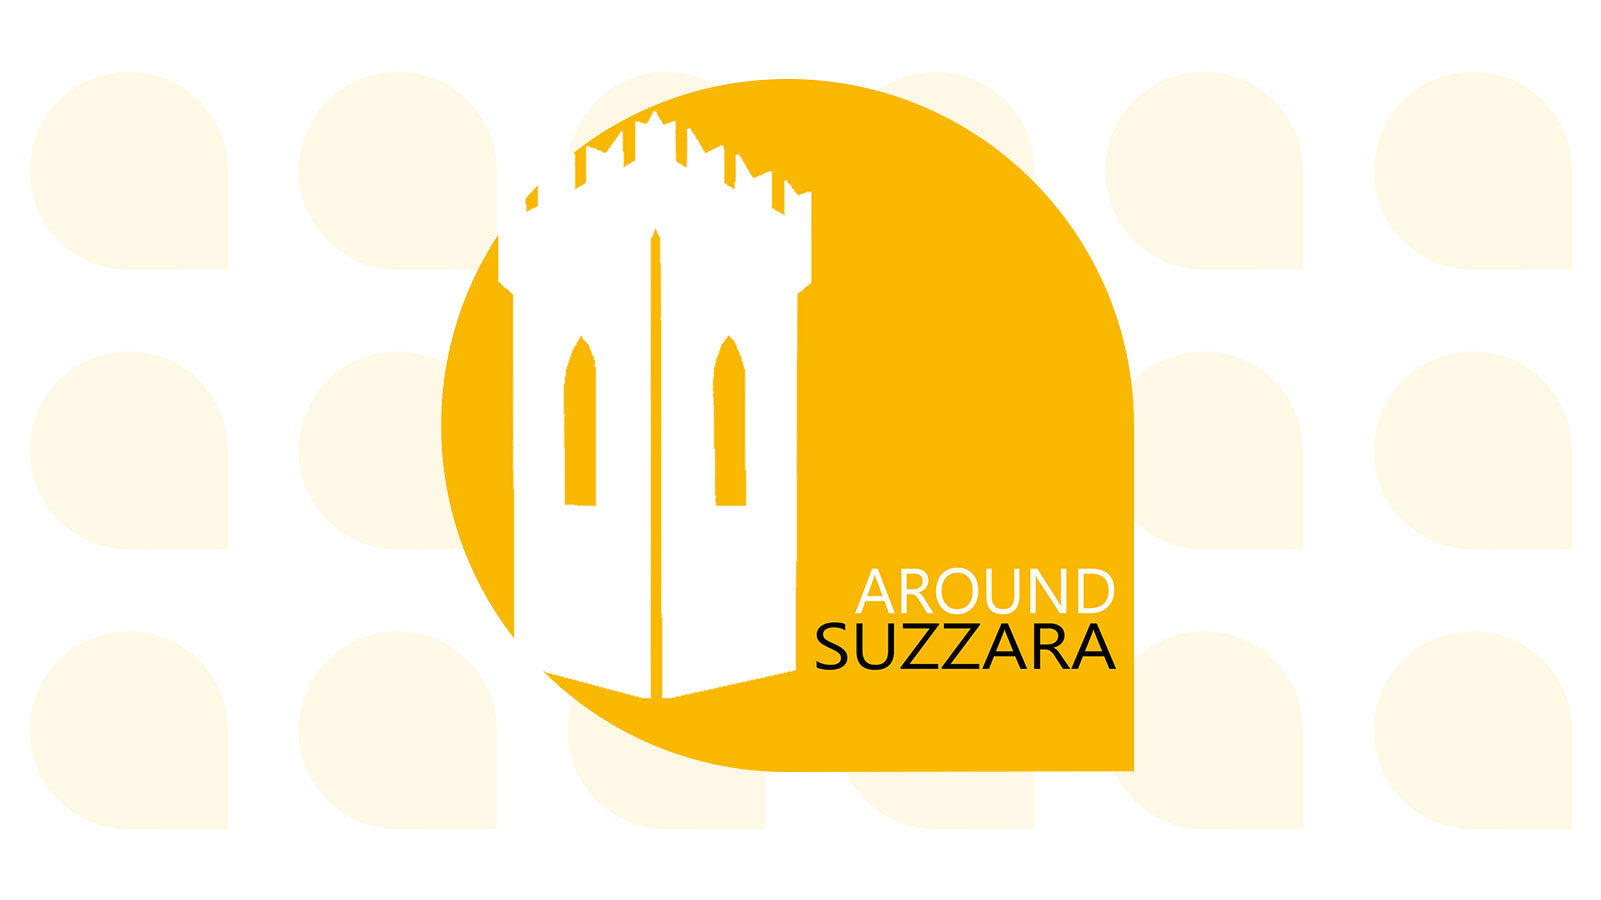 Around Suzzara